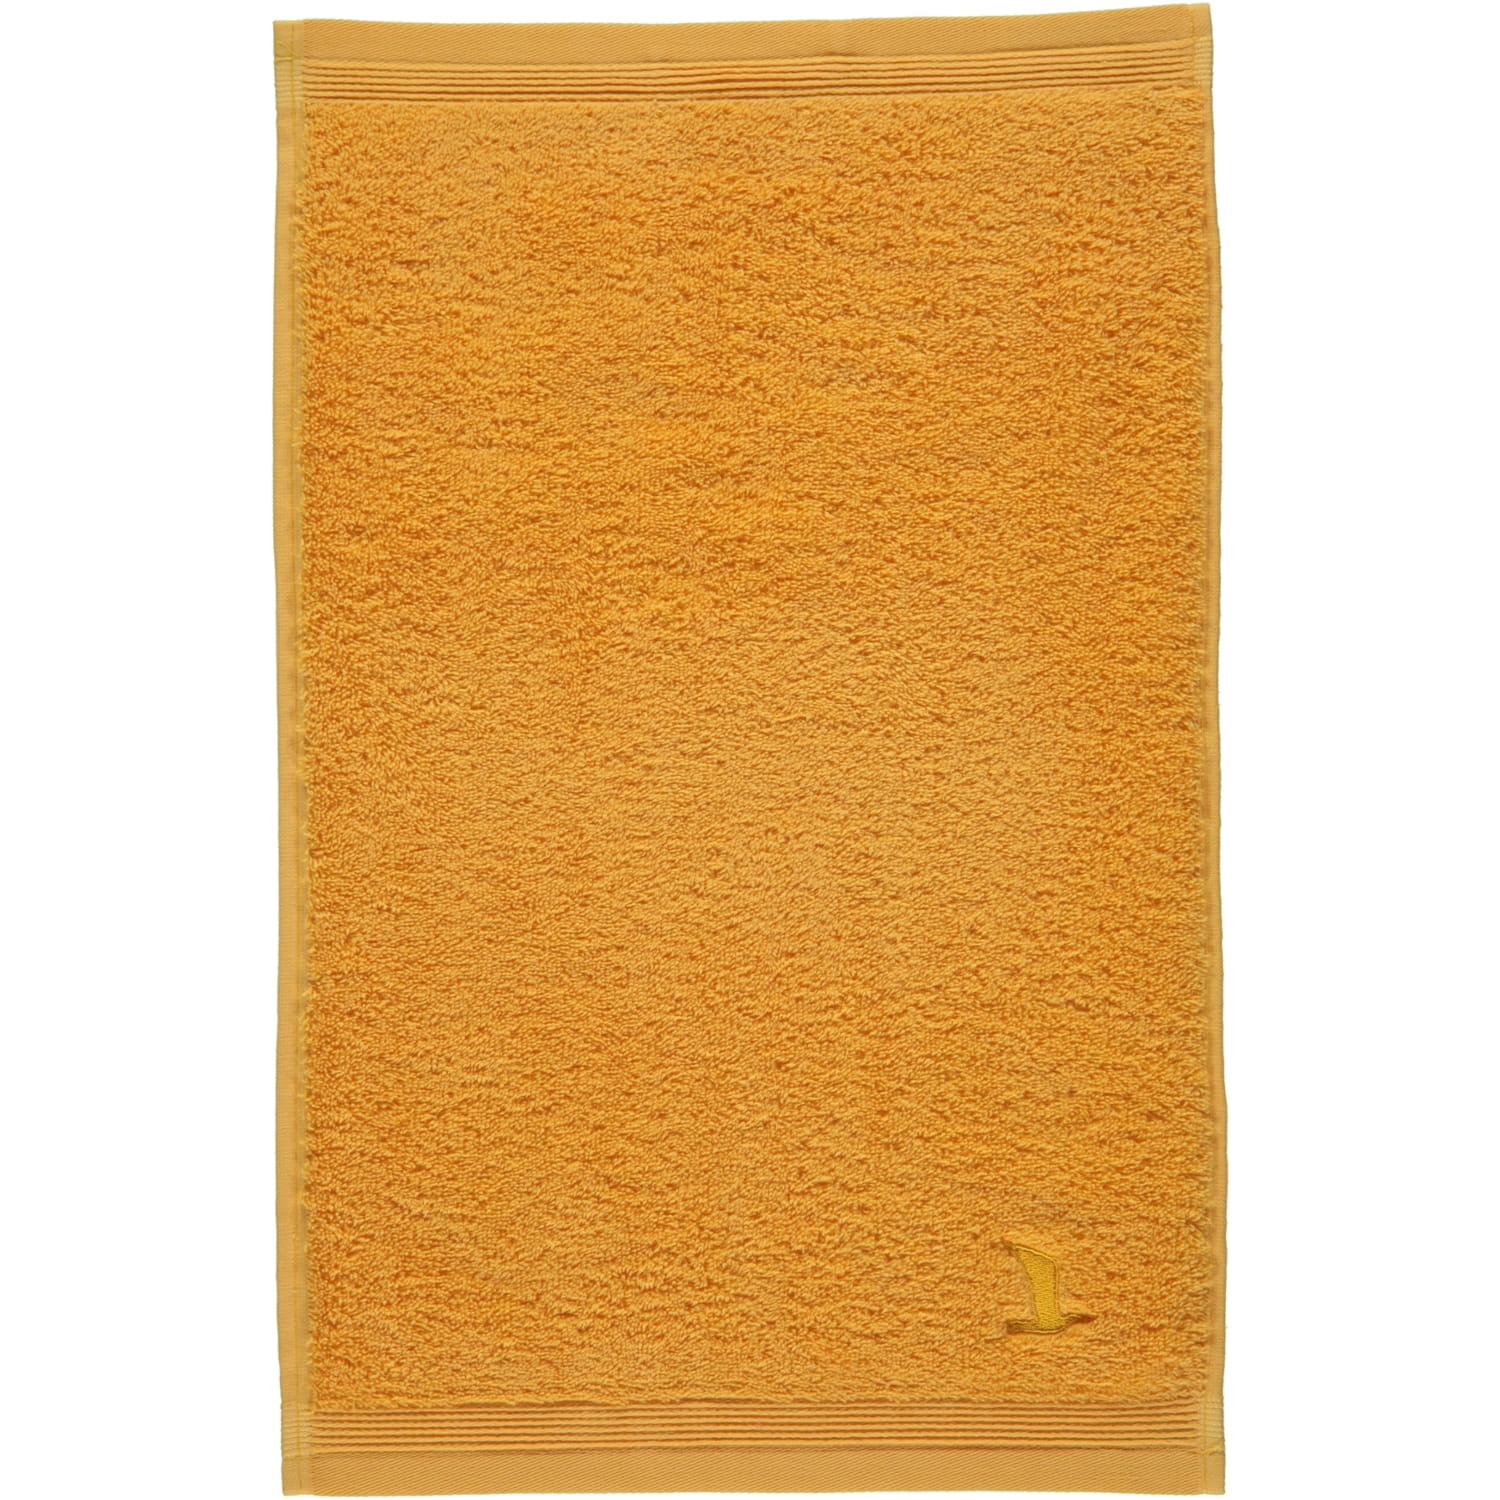 Farbe: Möve - (0-1725/8775) | 115 - - Marken gold Handtücher | Möve | Superwuschel Möve